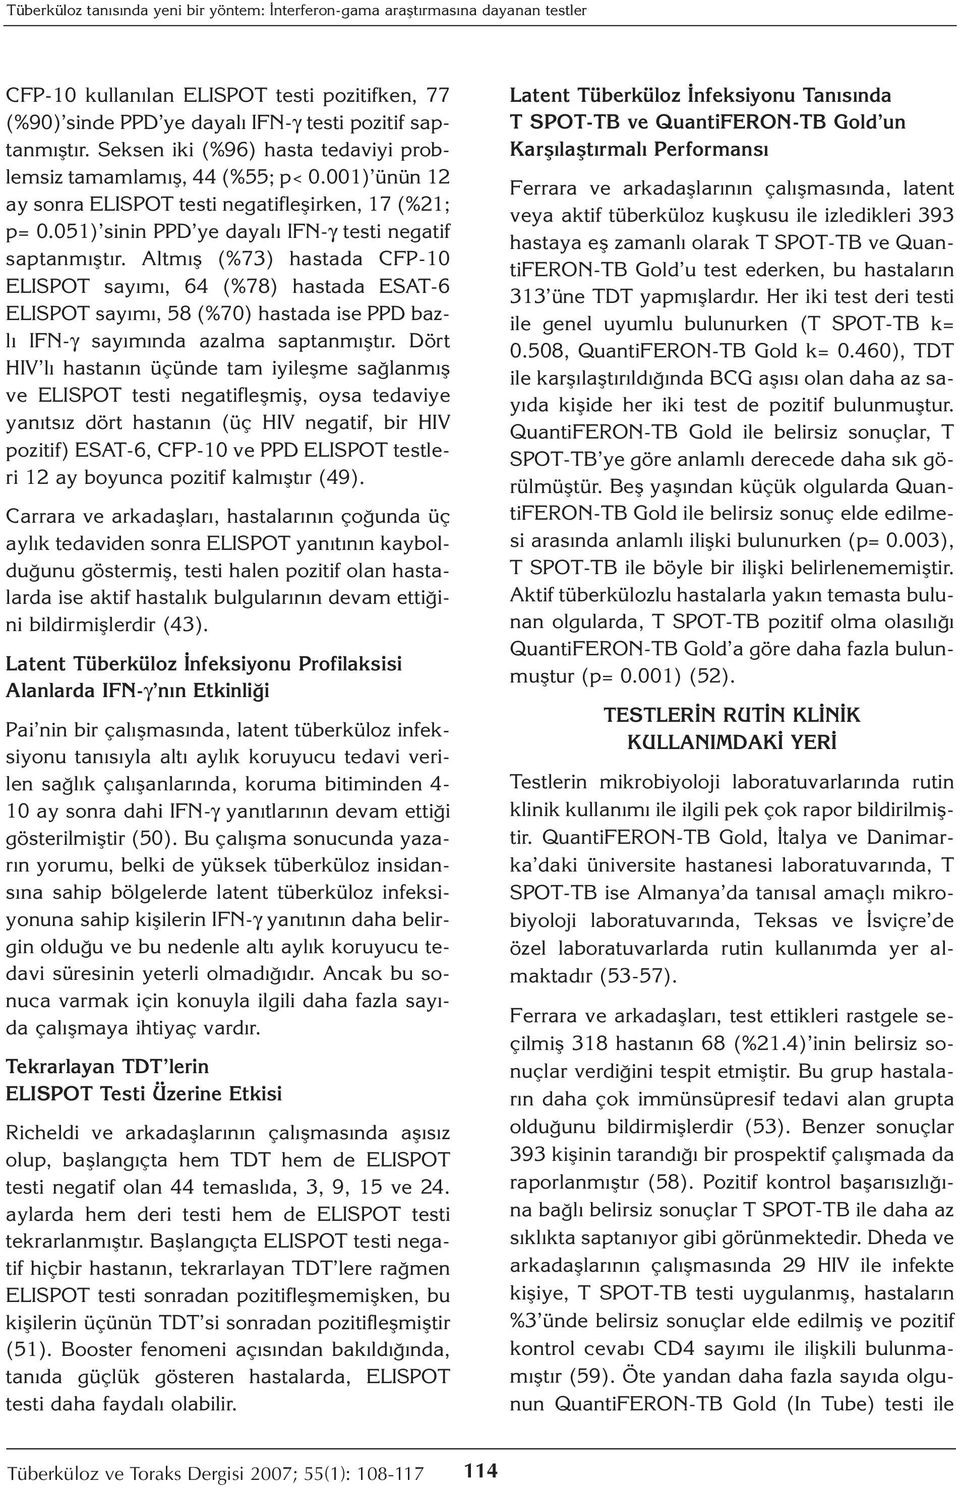 Altmış (%73) hastada CFP-10 ELISPOT sayımı, 64 (%78) hastada ESAT-6 ELISPOT sayımı, 58 (%70) hastada ise PPD bazlı IFN-γ sayımında azalma saptanmıştır.